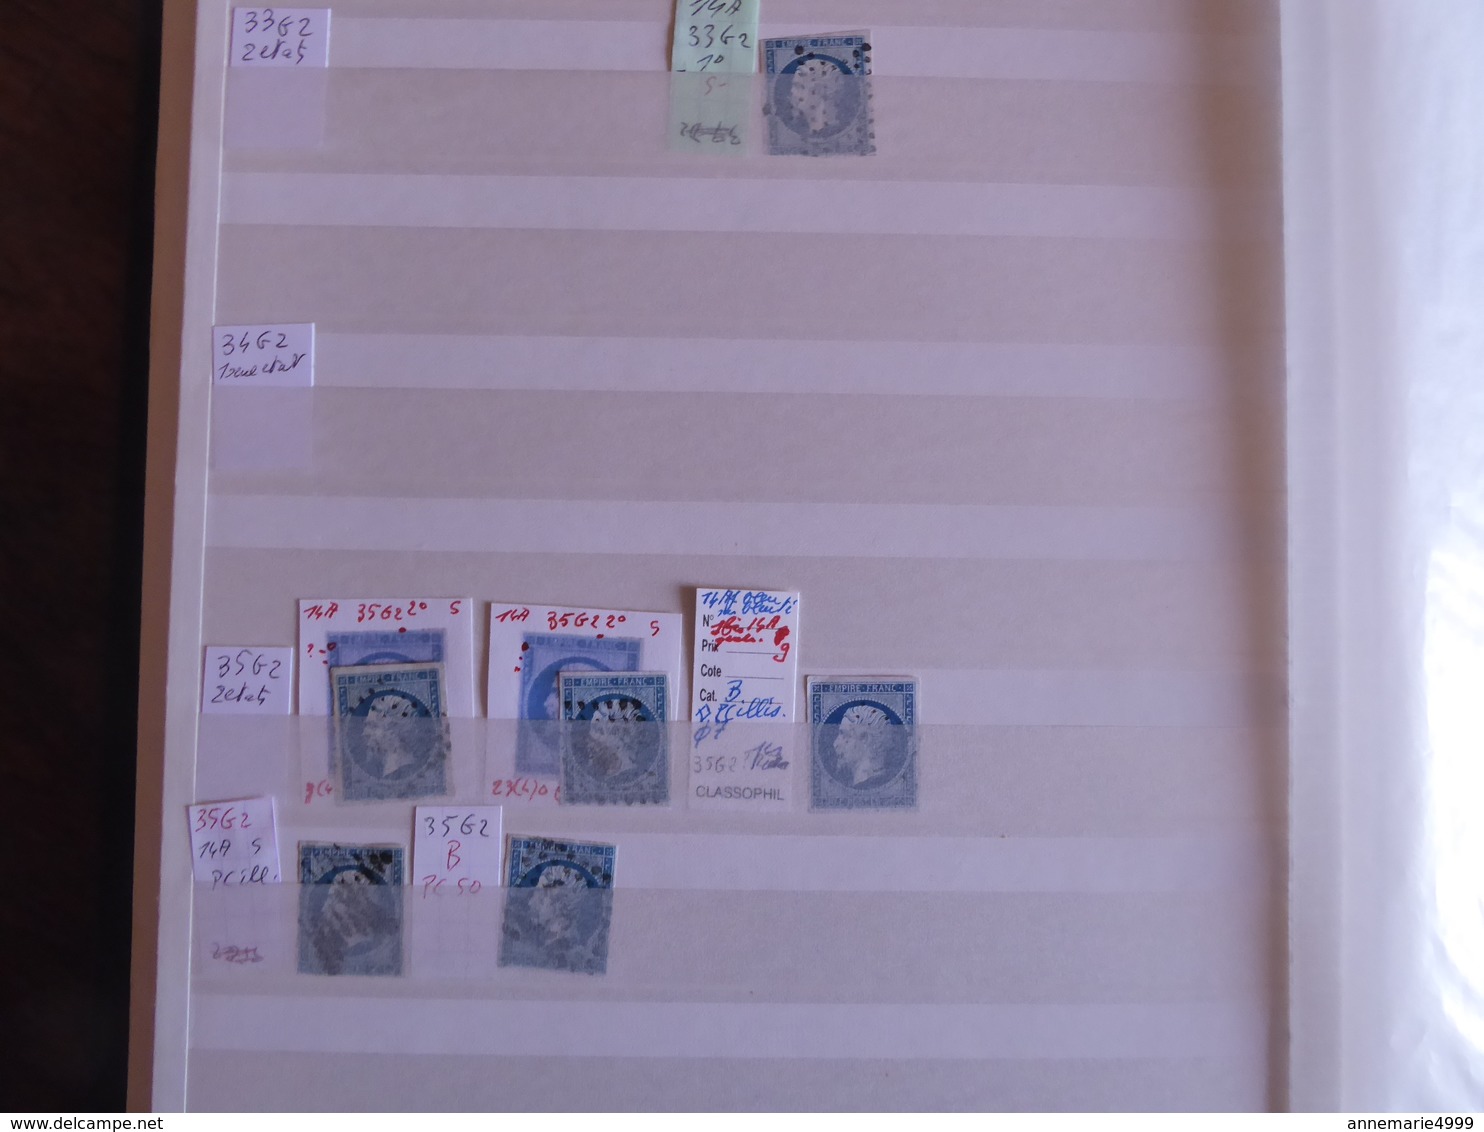 FRANCE PLANCHAGE Classeur de stock  Plus de 800 timbres du N°14 Napoléon III Panneau G2 tous identifiés Pour spécialiste